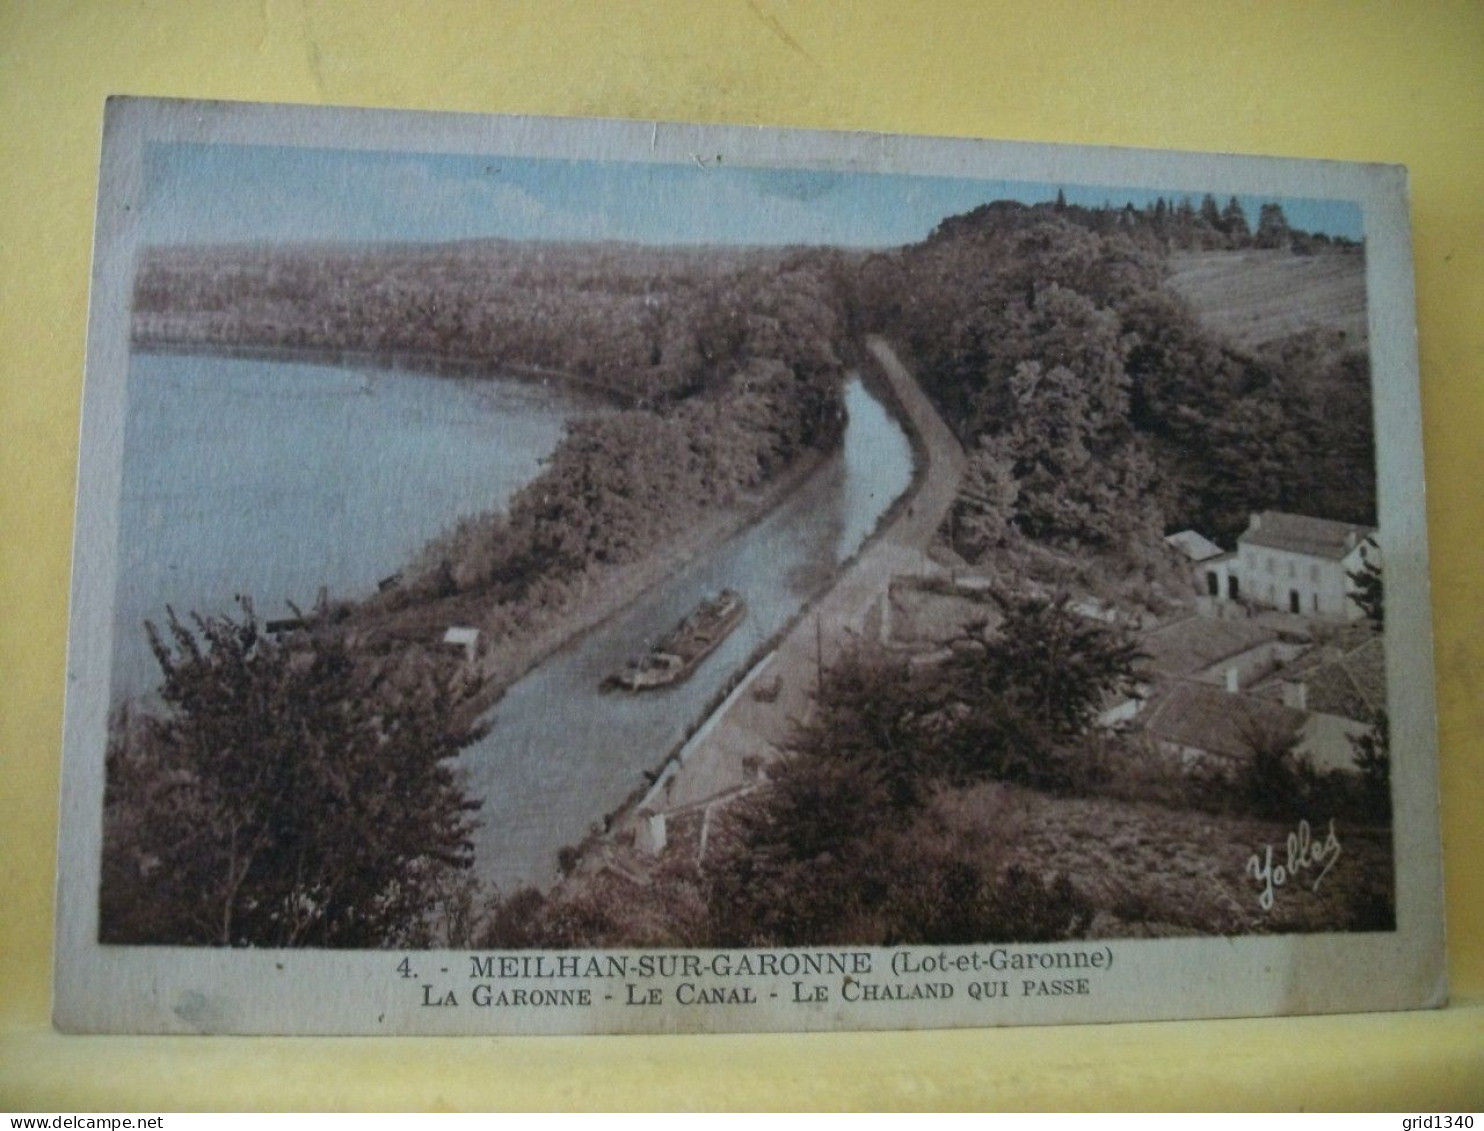 47 5893 CPA 1950 - 47 MEILHAN SUR GARONNE - LA GARONNE - LE CANAL - LE CHALAND QUI PASSE. - Meilhan Sur Garonne